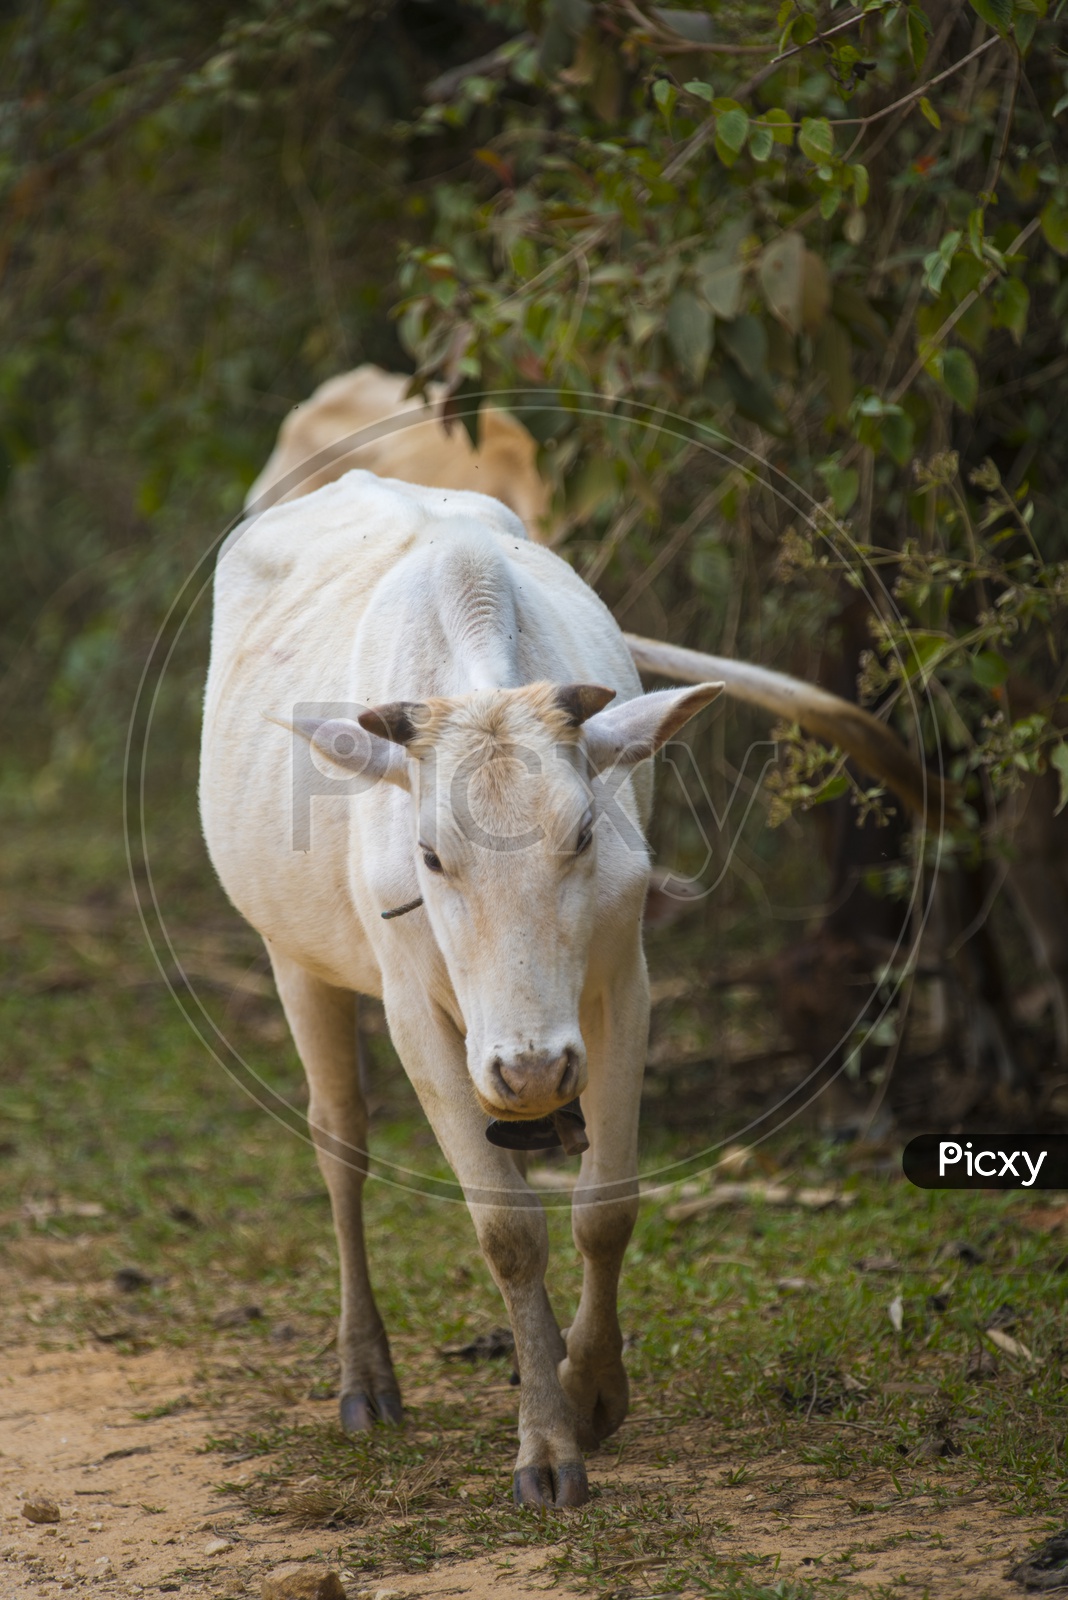 A cow - Cattle Hindu Brazil in farm field, Thailand